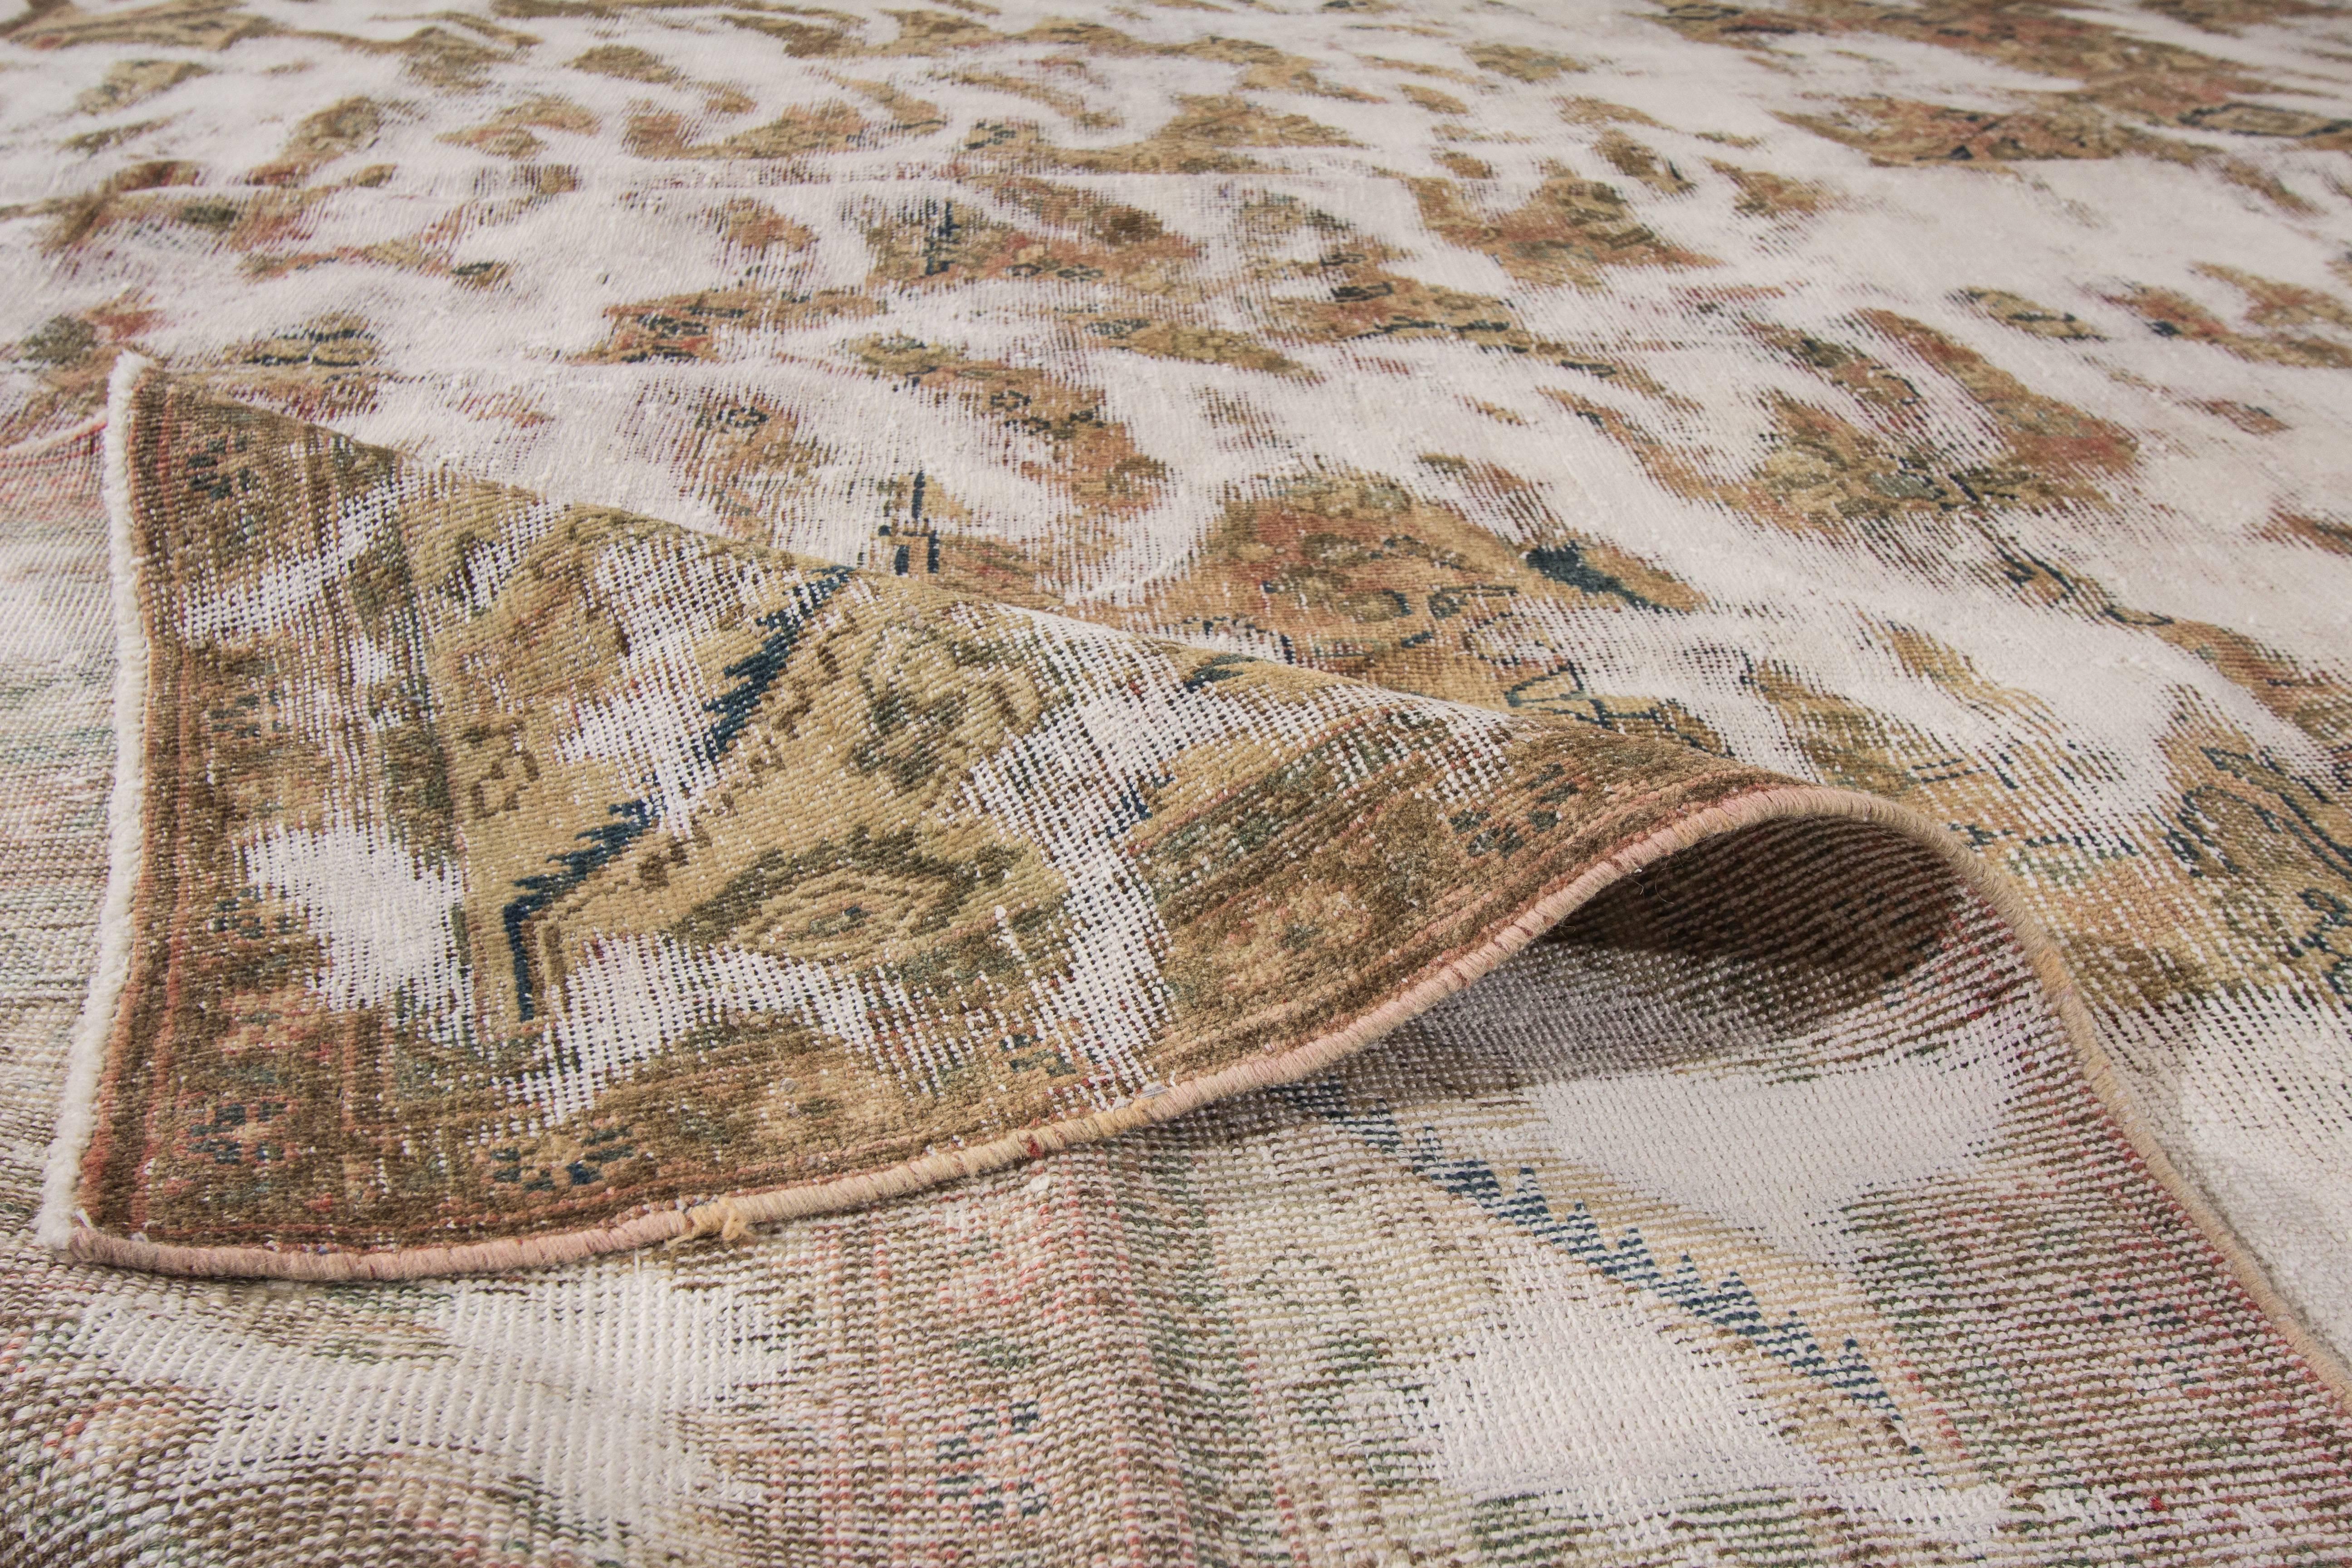 Ce magnifique tapis persan Tabriz, doté d'un design noué à la main, rehaussera l'aspect de votre sol. Cette collection est réalisée en laine. Ce tapis de Tabriz présente des motifs comprenant un médaillon central entouré d'arabesques.

Ses